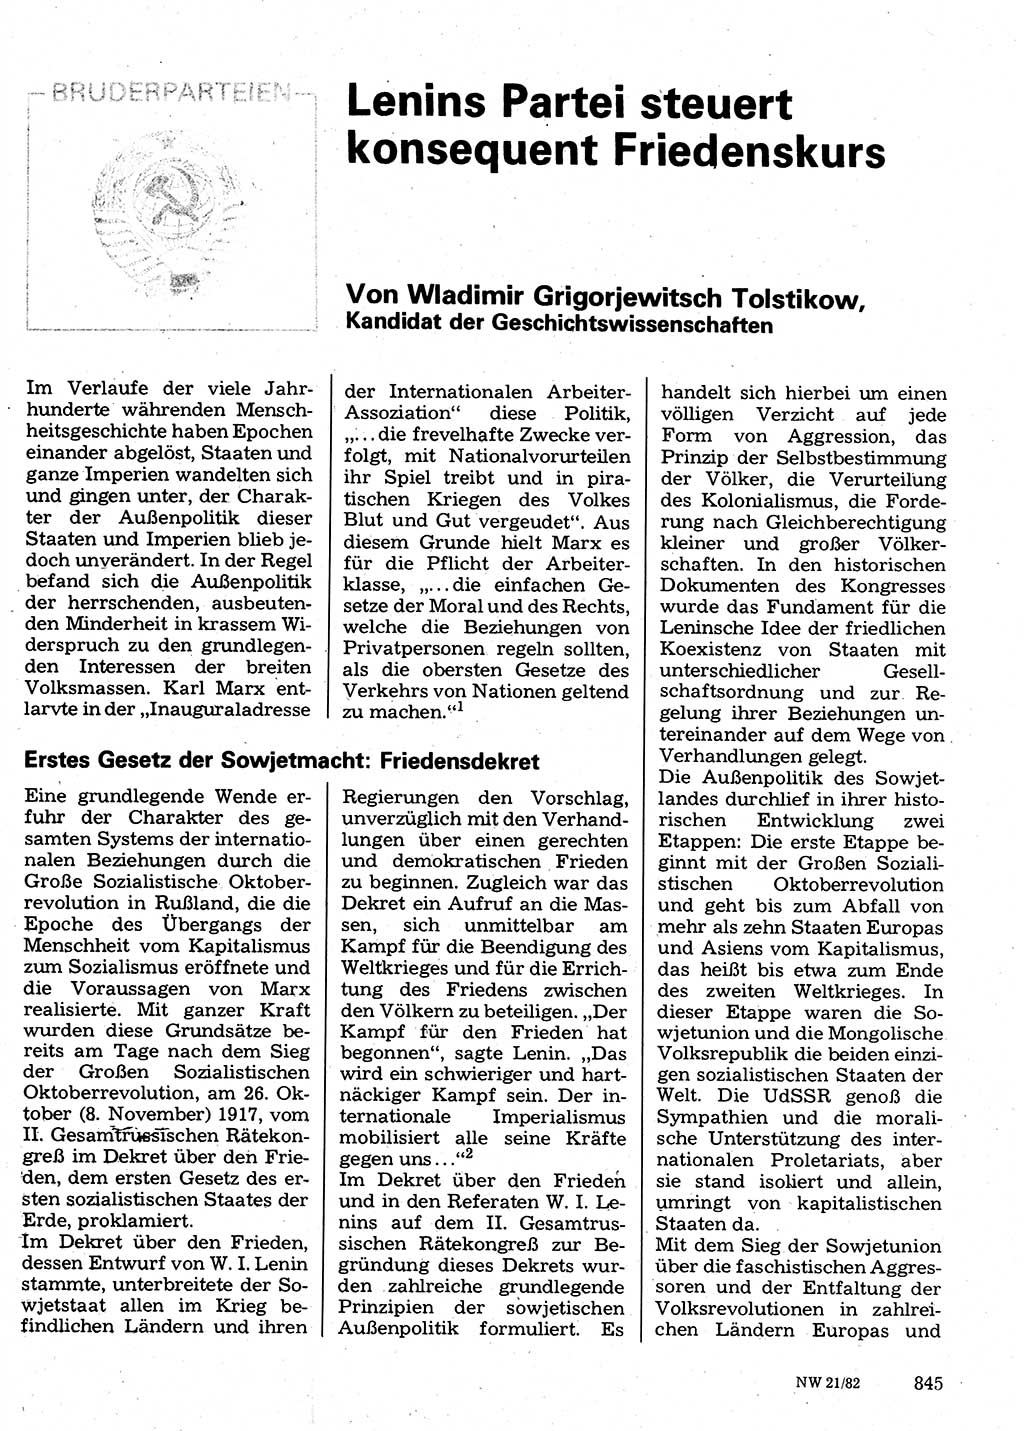 Neuer Weg (NW), Organ des Zentralkomitees (ZK) der SED (Sozialistische Einheitspartei Deutschlands) für Fragen des Parteilebens, 37. Jahrgang [Deutsche Demokratische Republik (DDR)] 1982, Seite 845 (NW ZK SED DDR 1982, S. 845)